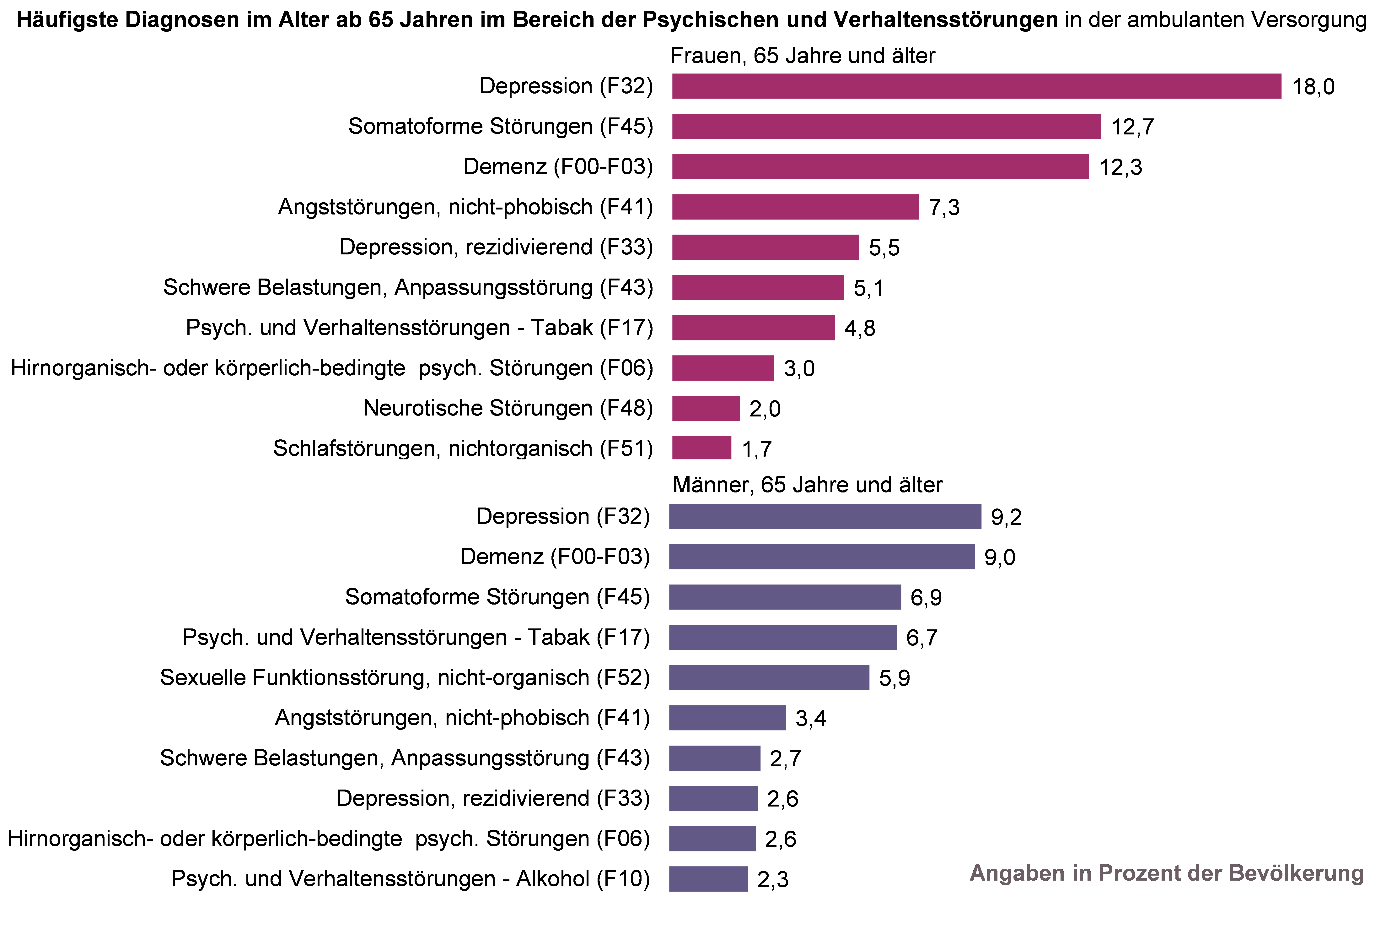 Balkendiagramm der ambulanten Behandlungshäufigkeit häufiger Psychischer und Verhaltensstörungen bei Frauen und Männern ab 65 Jahren in NRW in 2020